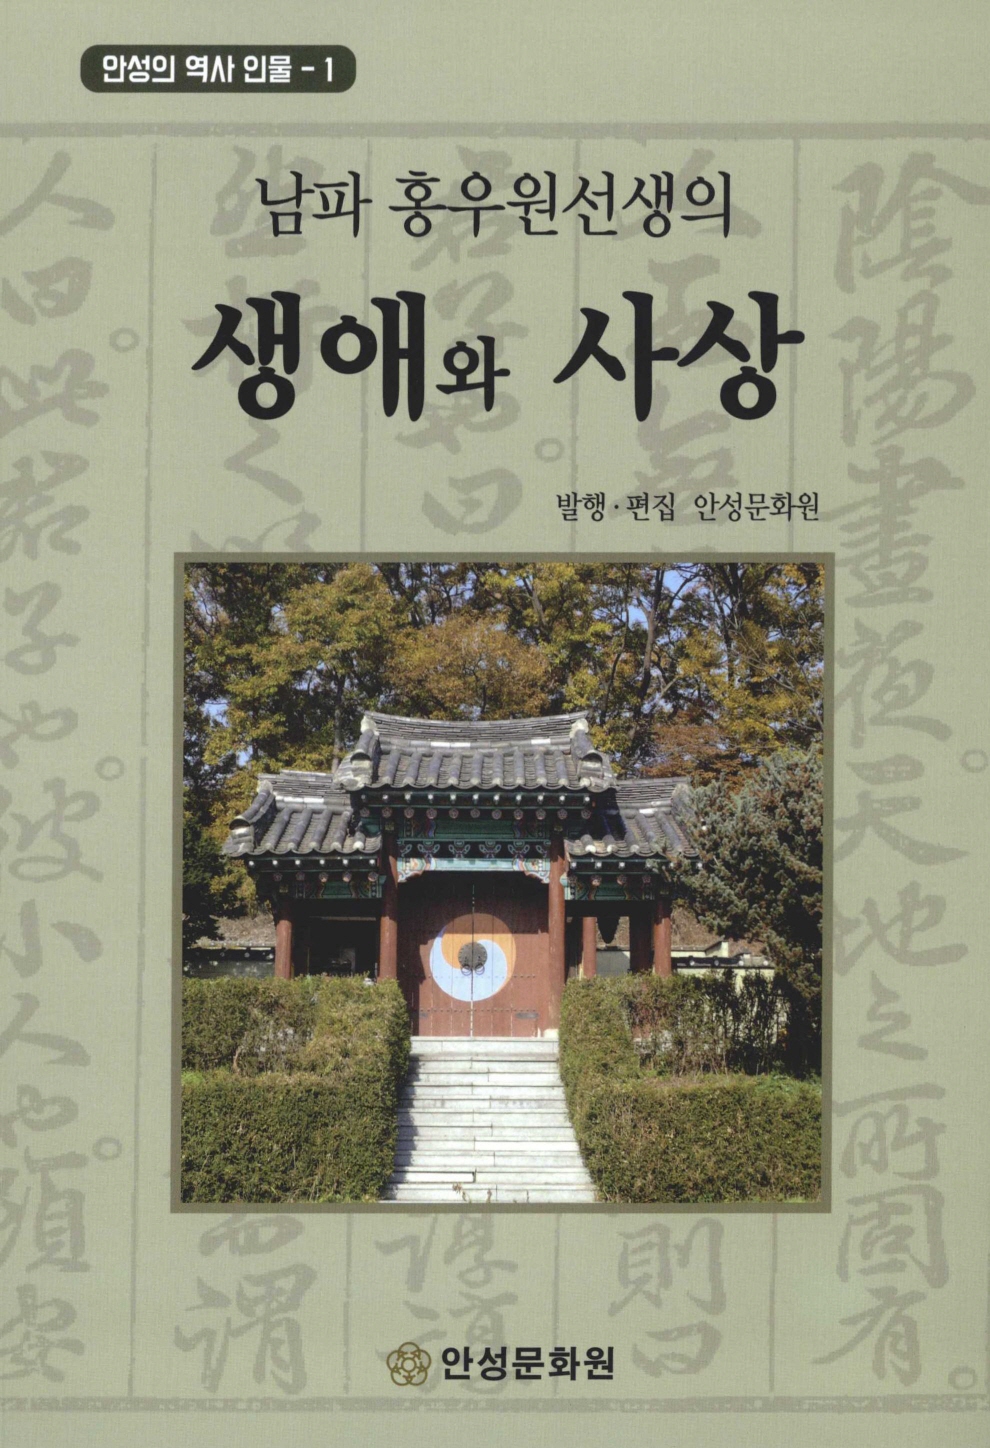 안성의 역사 인물 1 남파 홍우원선생의 생애와 사상